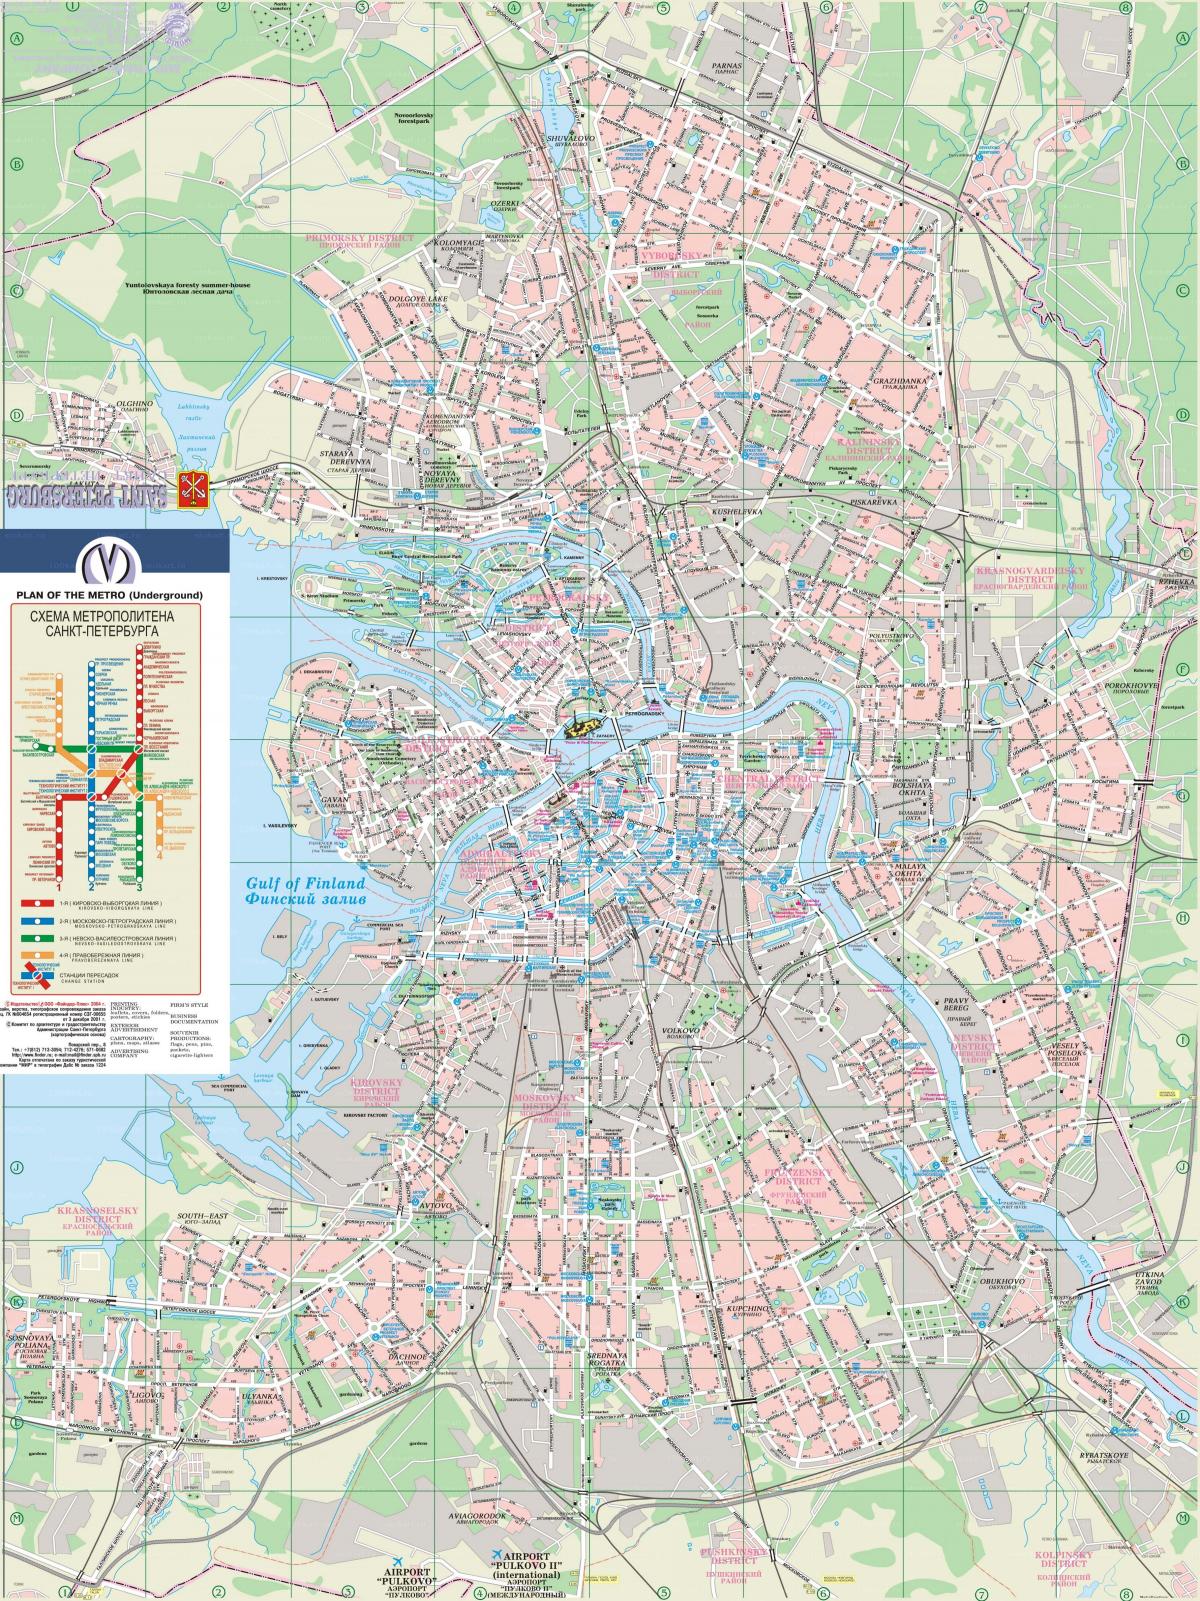 Mappa della città di San Pietroburgo